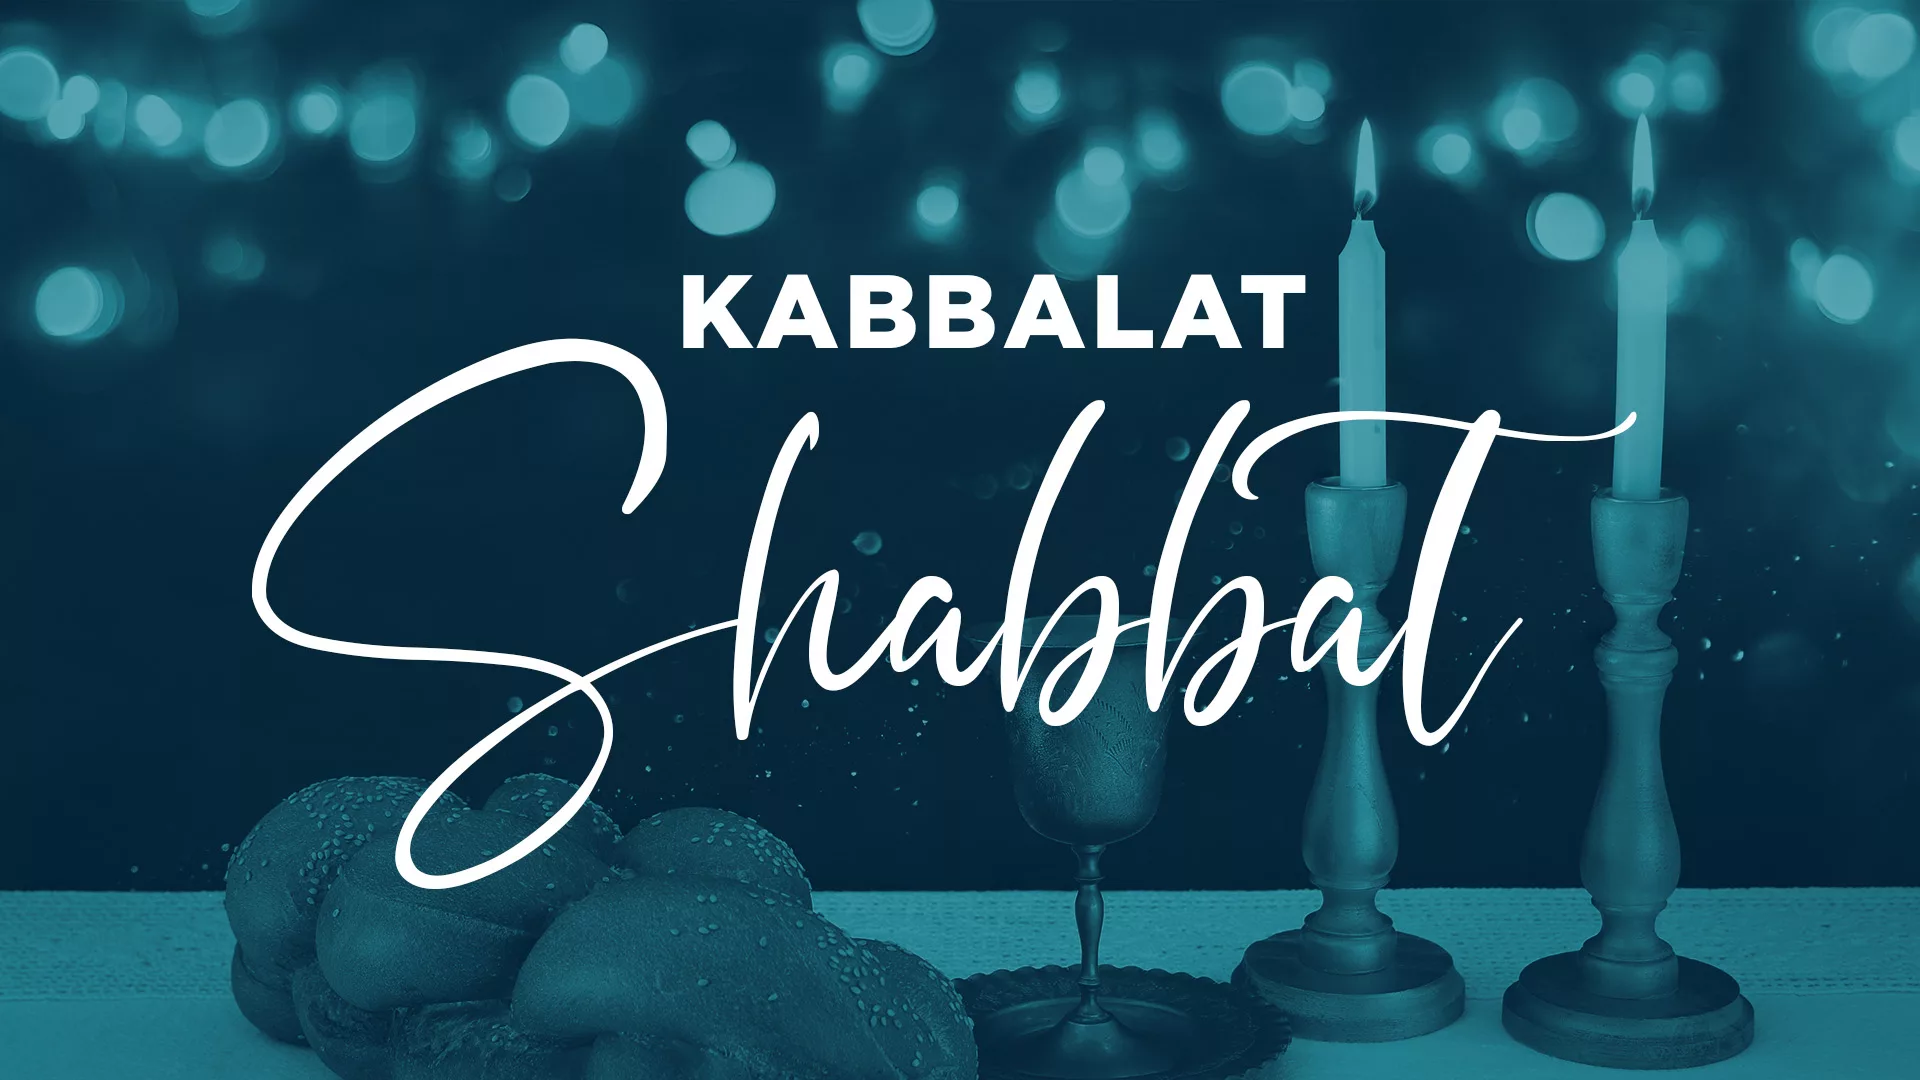 Kabbalat Shabbat New Graphic